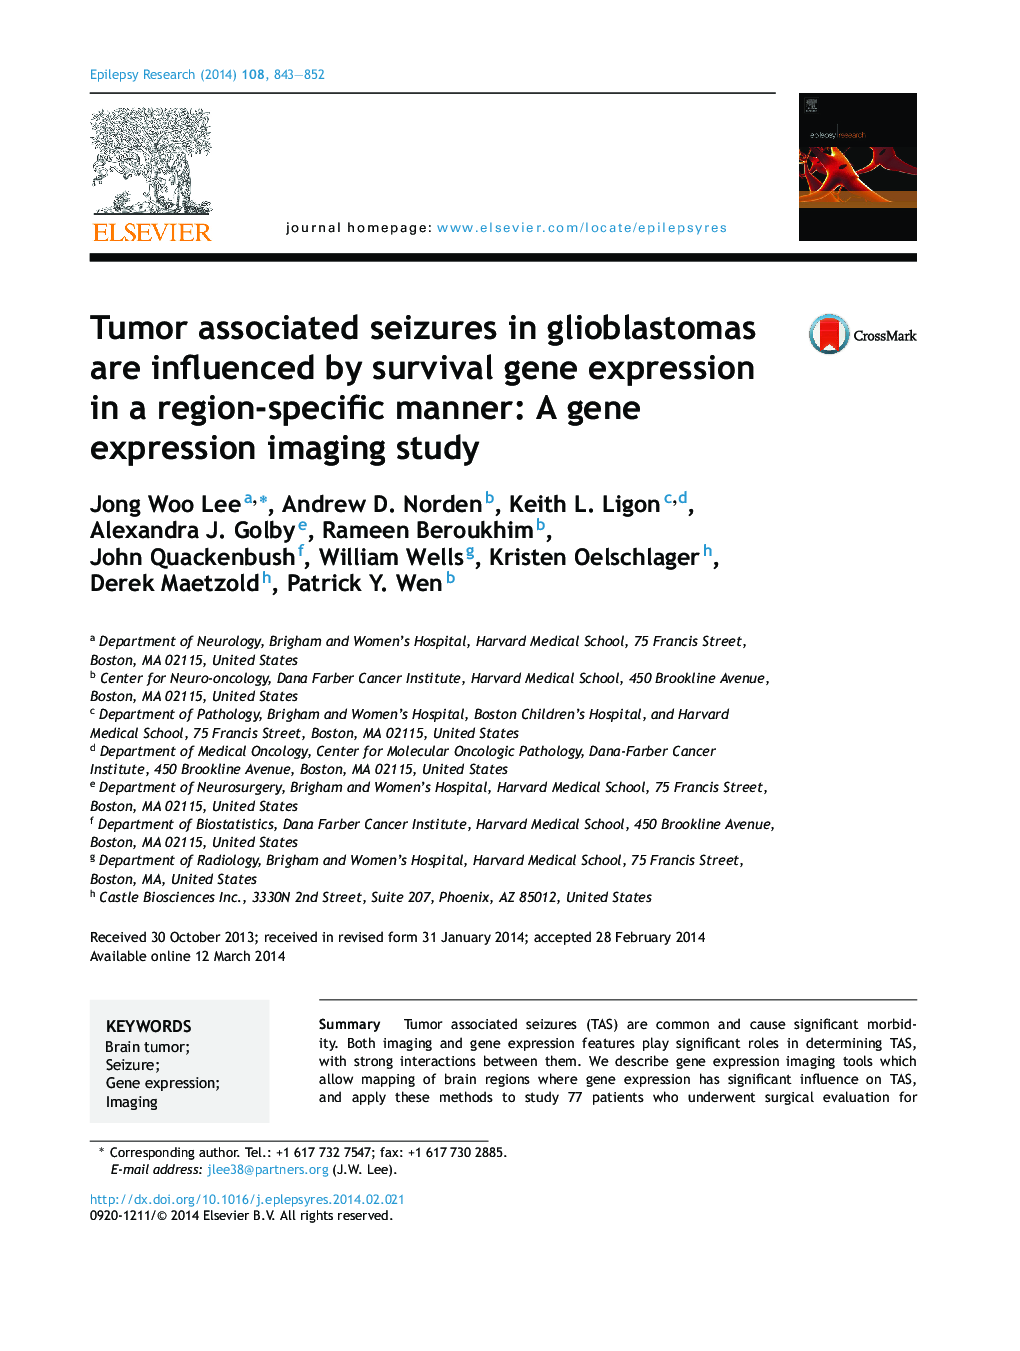 تشنج مرتبط با تومور در گلوبلاستوم تحت تأثیر بیان ژن بقا در یک منطقه خاص قرار می گیرد: مطالعه تصویری بیان ژن 